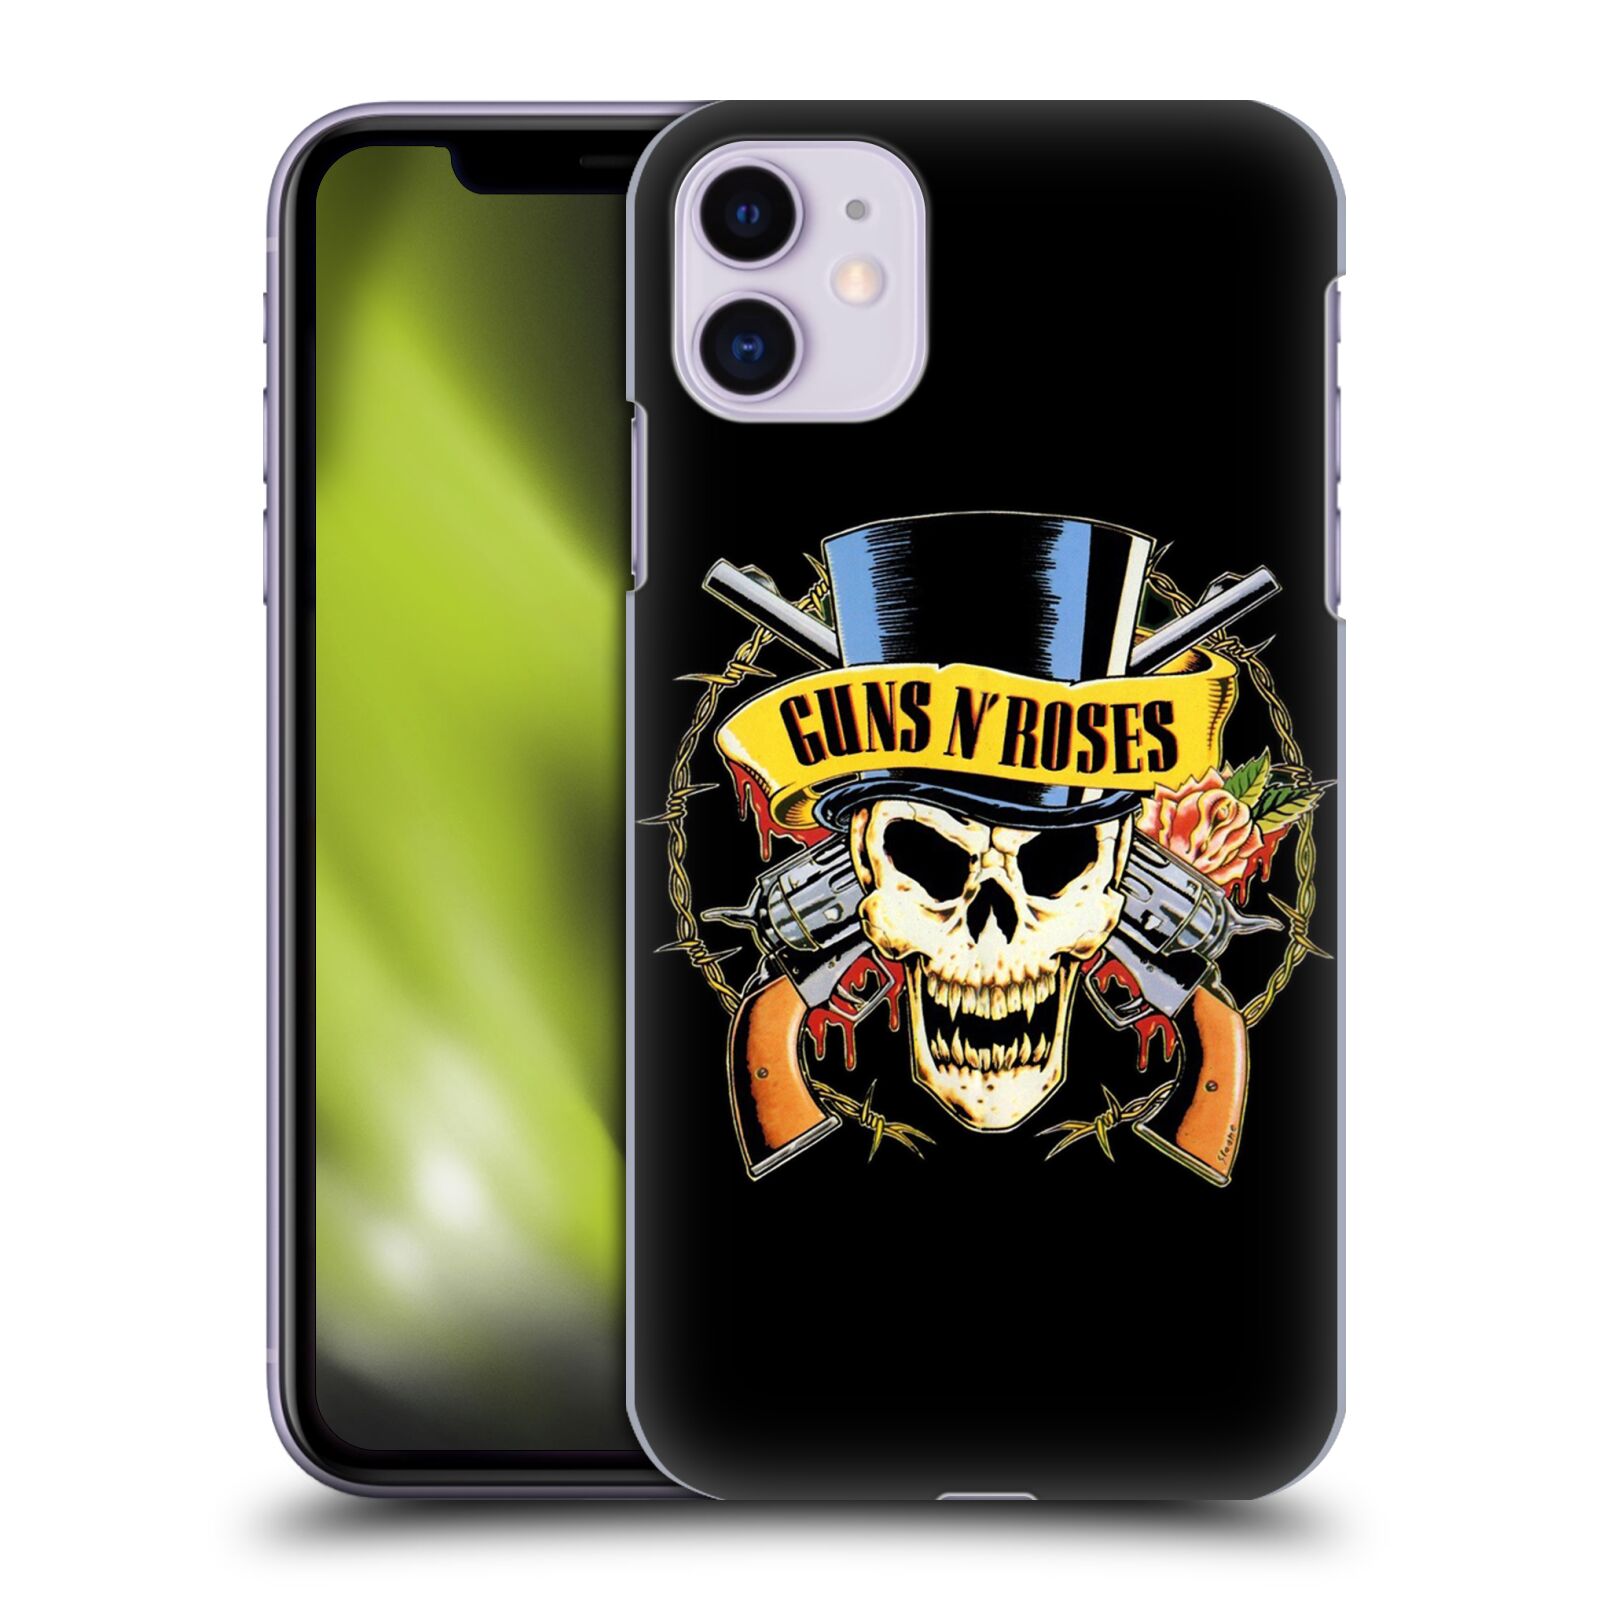 Plastové pouzdro na mobil Apple iPhone 11 - Head Case - Guns N' Roses - Lebka